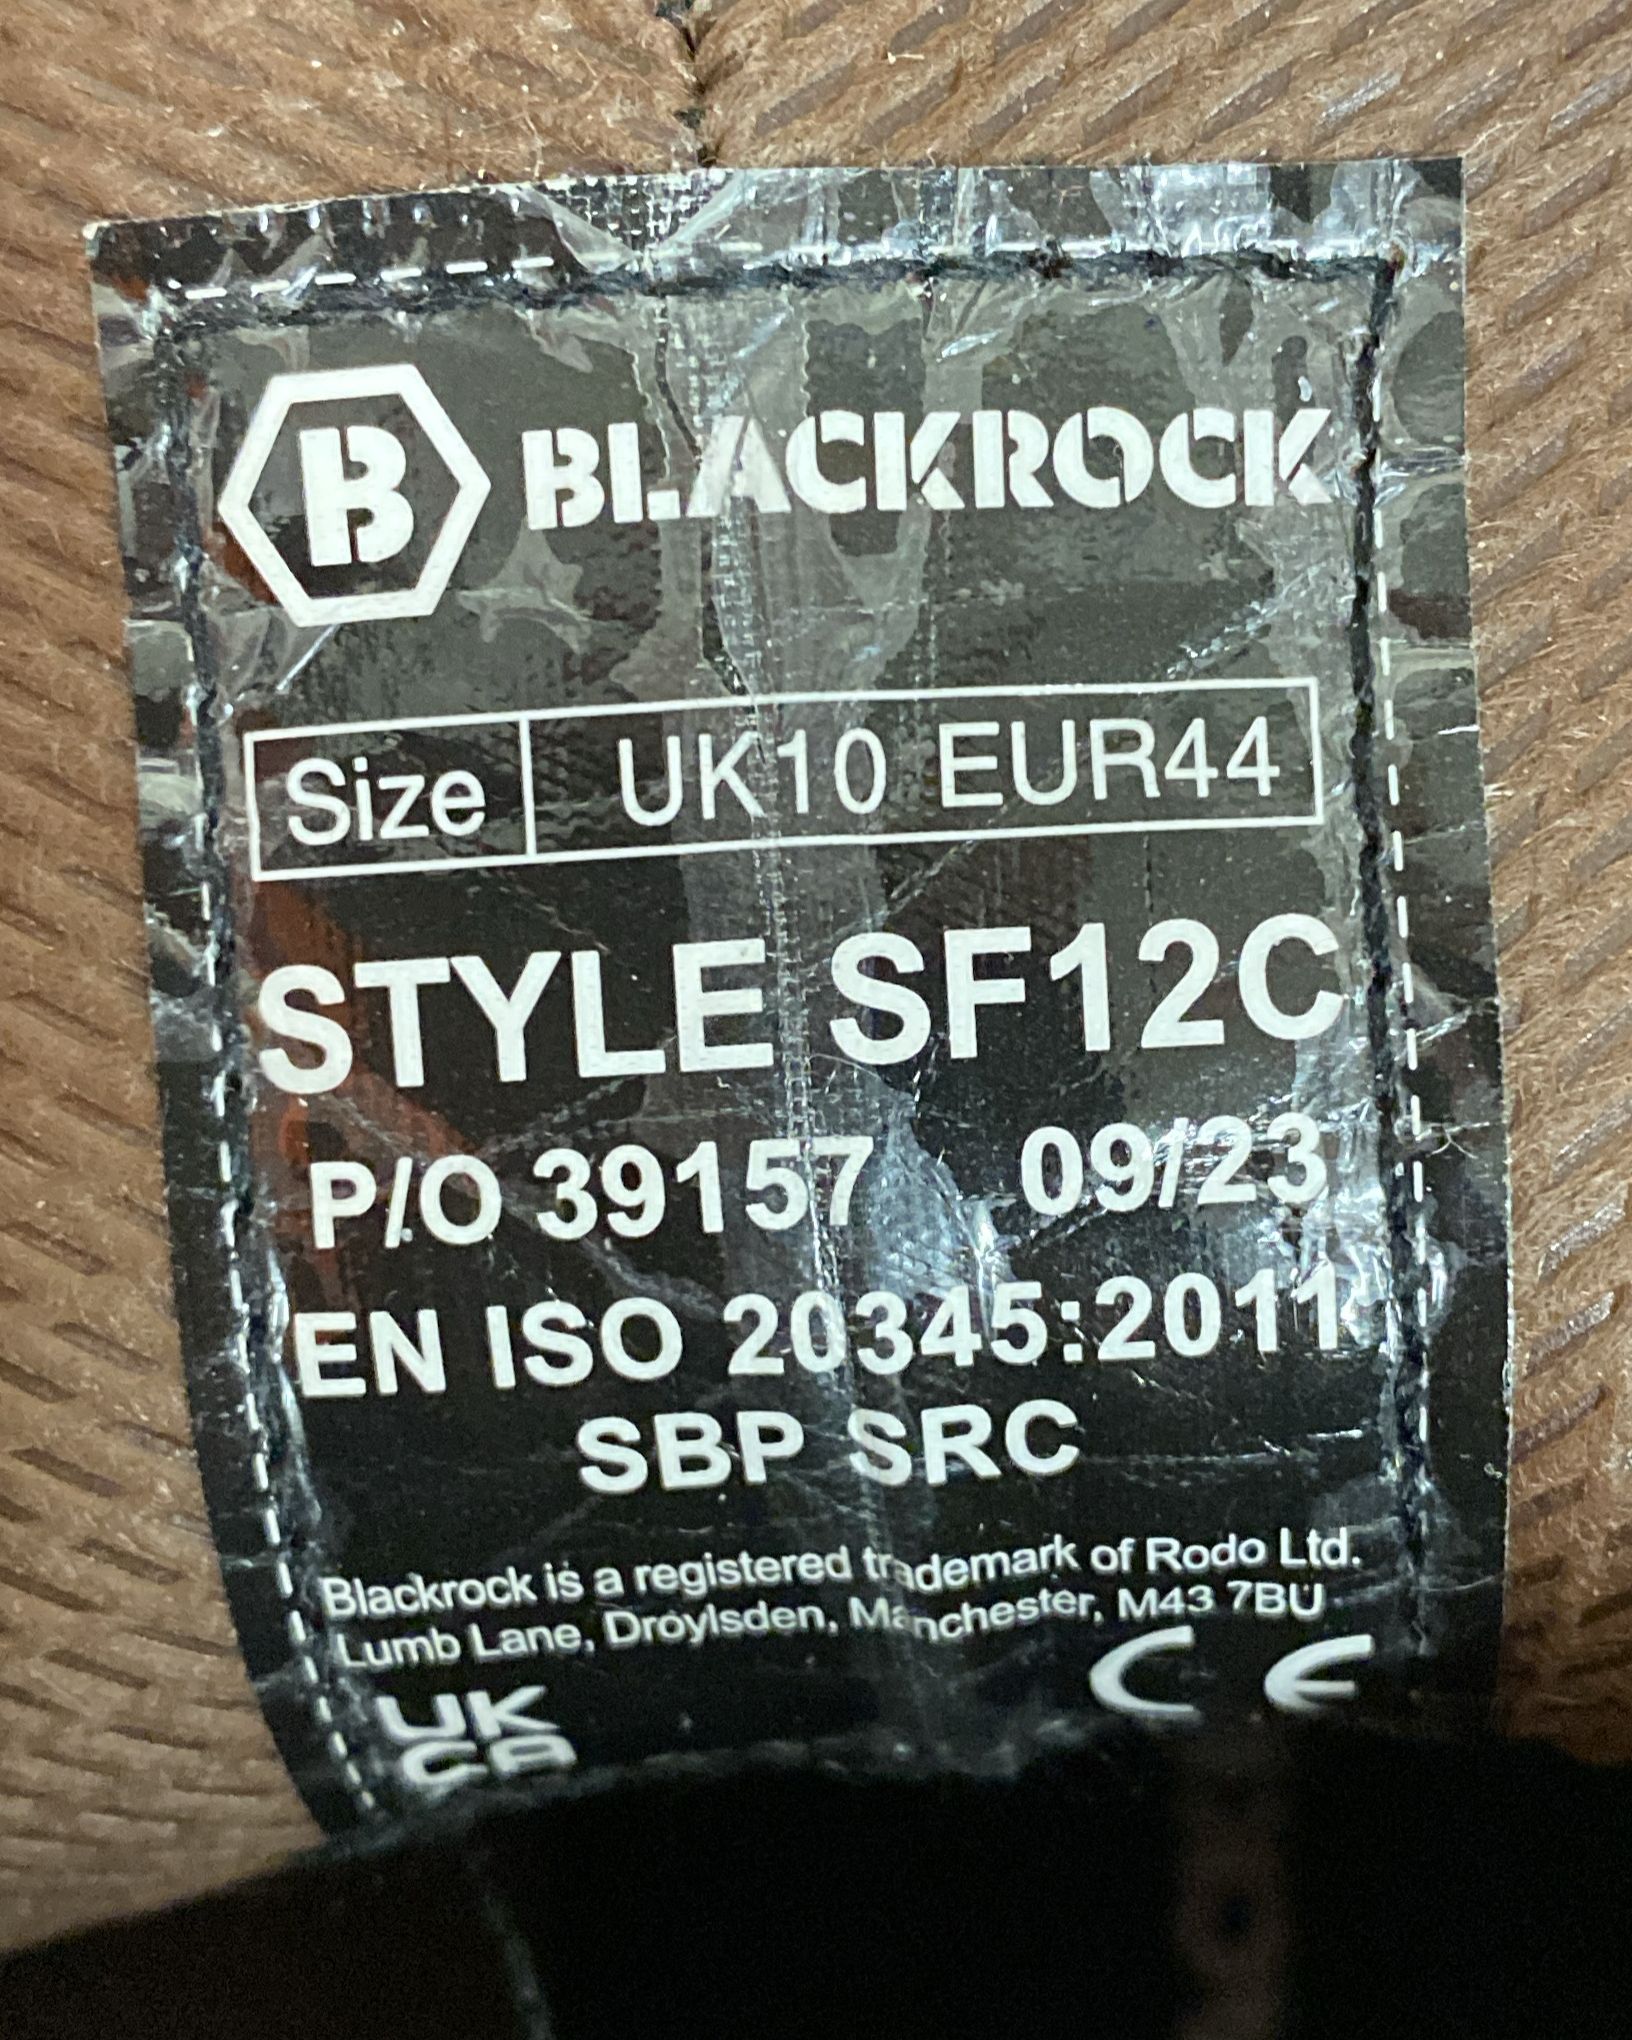 Blackrock SF12C Safety Boot-Brown-Size - UK 10, EUR 44-1044